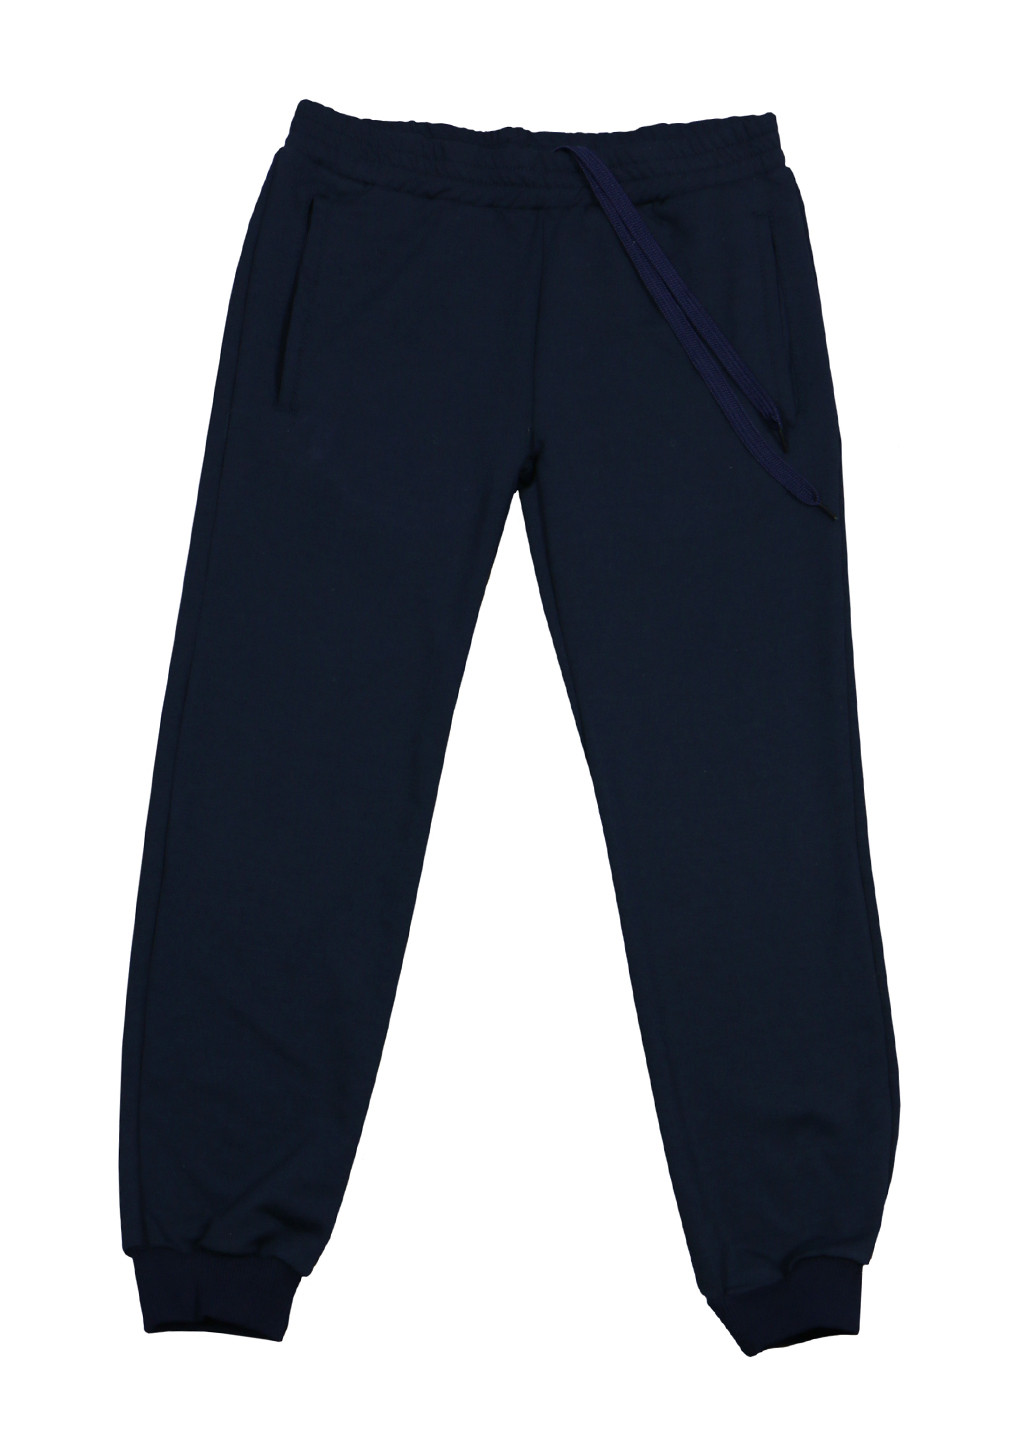 Темно-синие спортивные демисезонные брюки со средней талией DaNa-kids